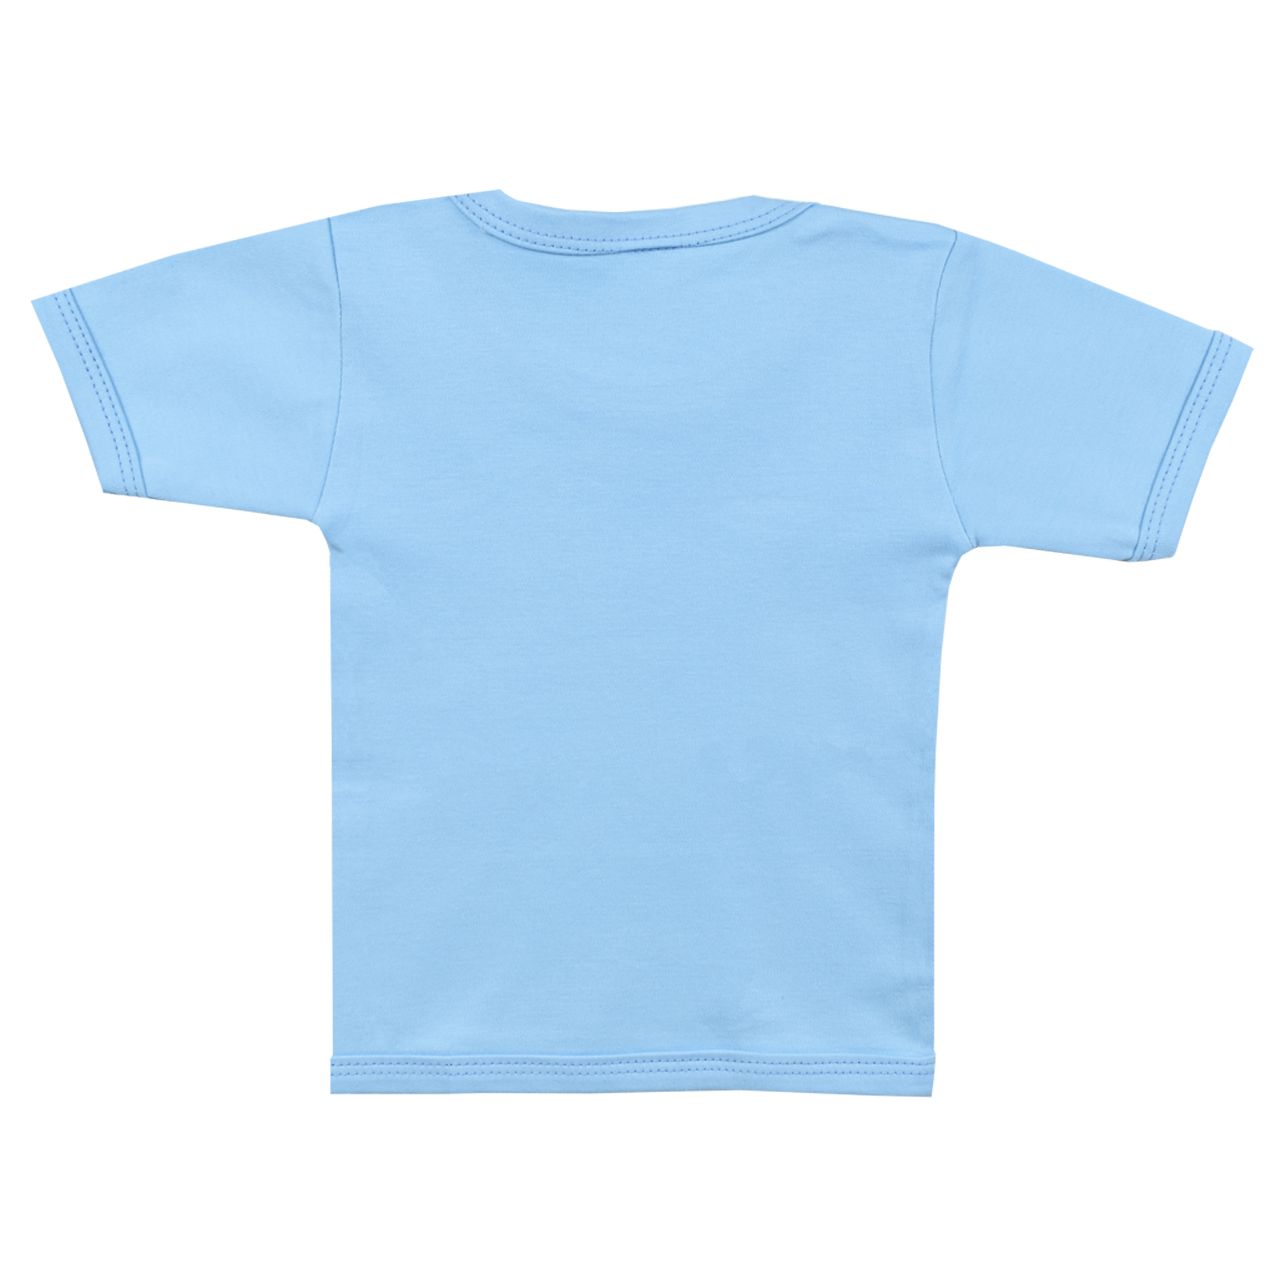 تی شرت آستین کوتاه نوزادی اسپیکو کد 301 -4 بسته دو عددی -  - 2